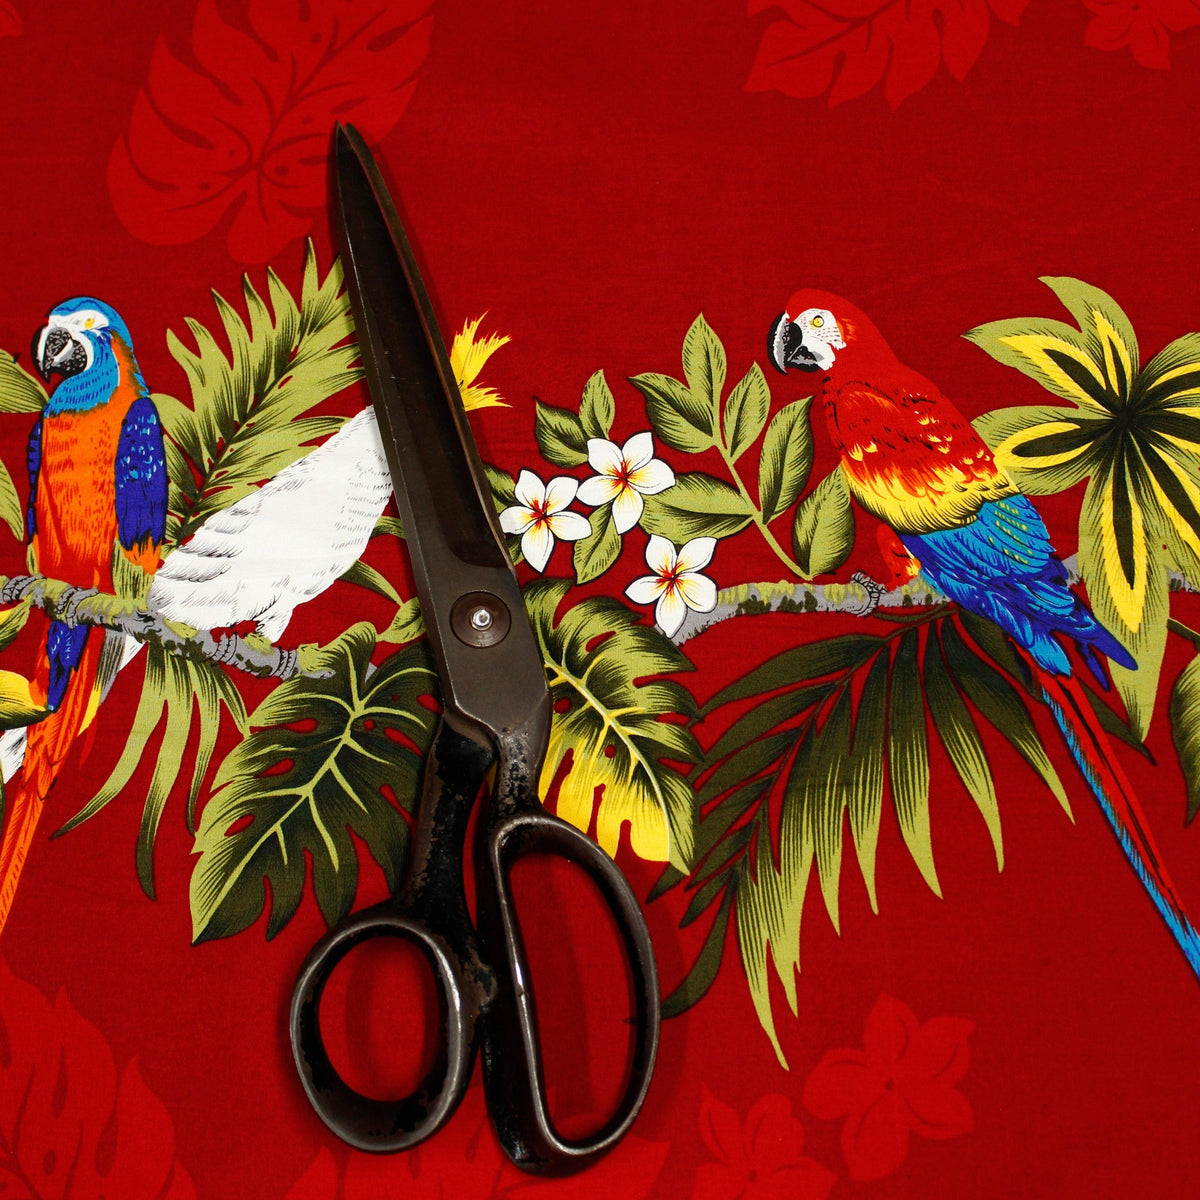 Cotton Batik Birds Parrots African Safari Animals Wildlife Sanctuary Multi  Color Cotton Fabric Print by The Yard (D302.41)